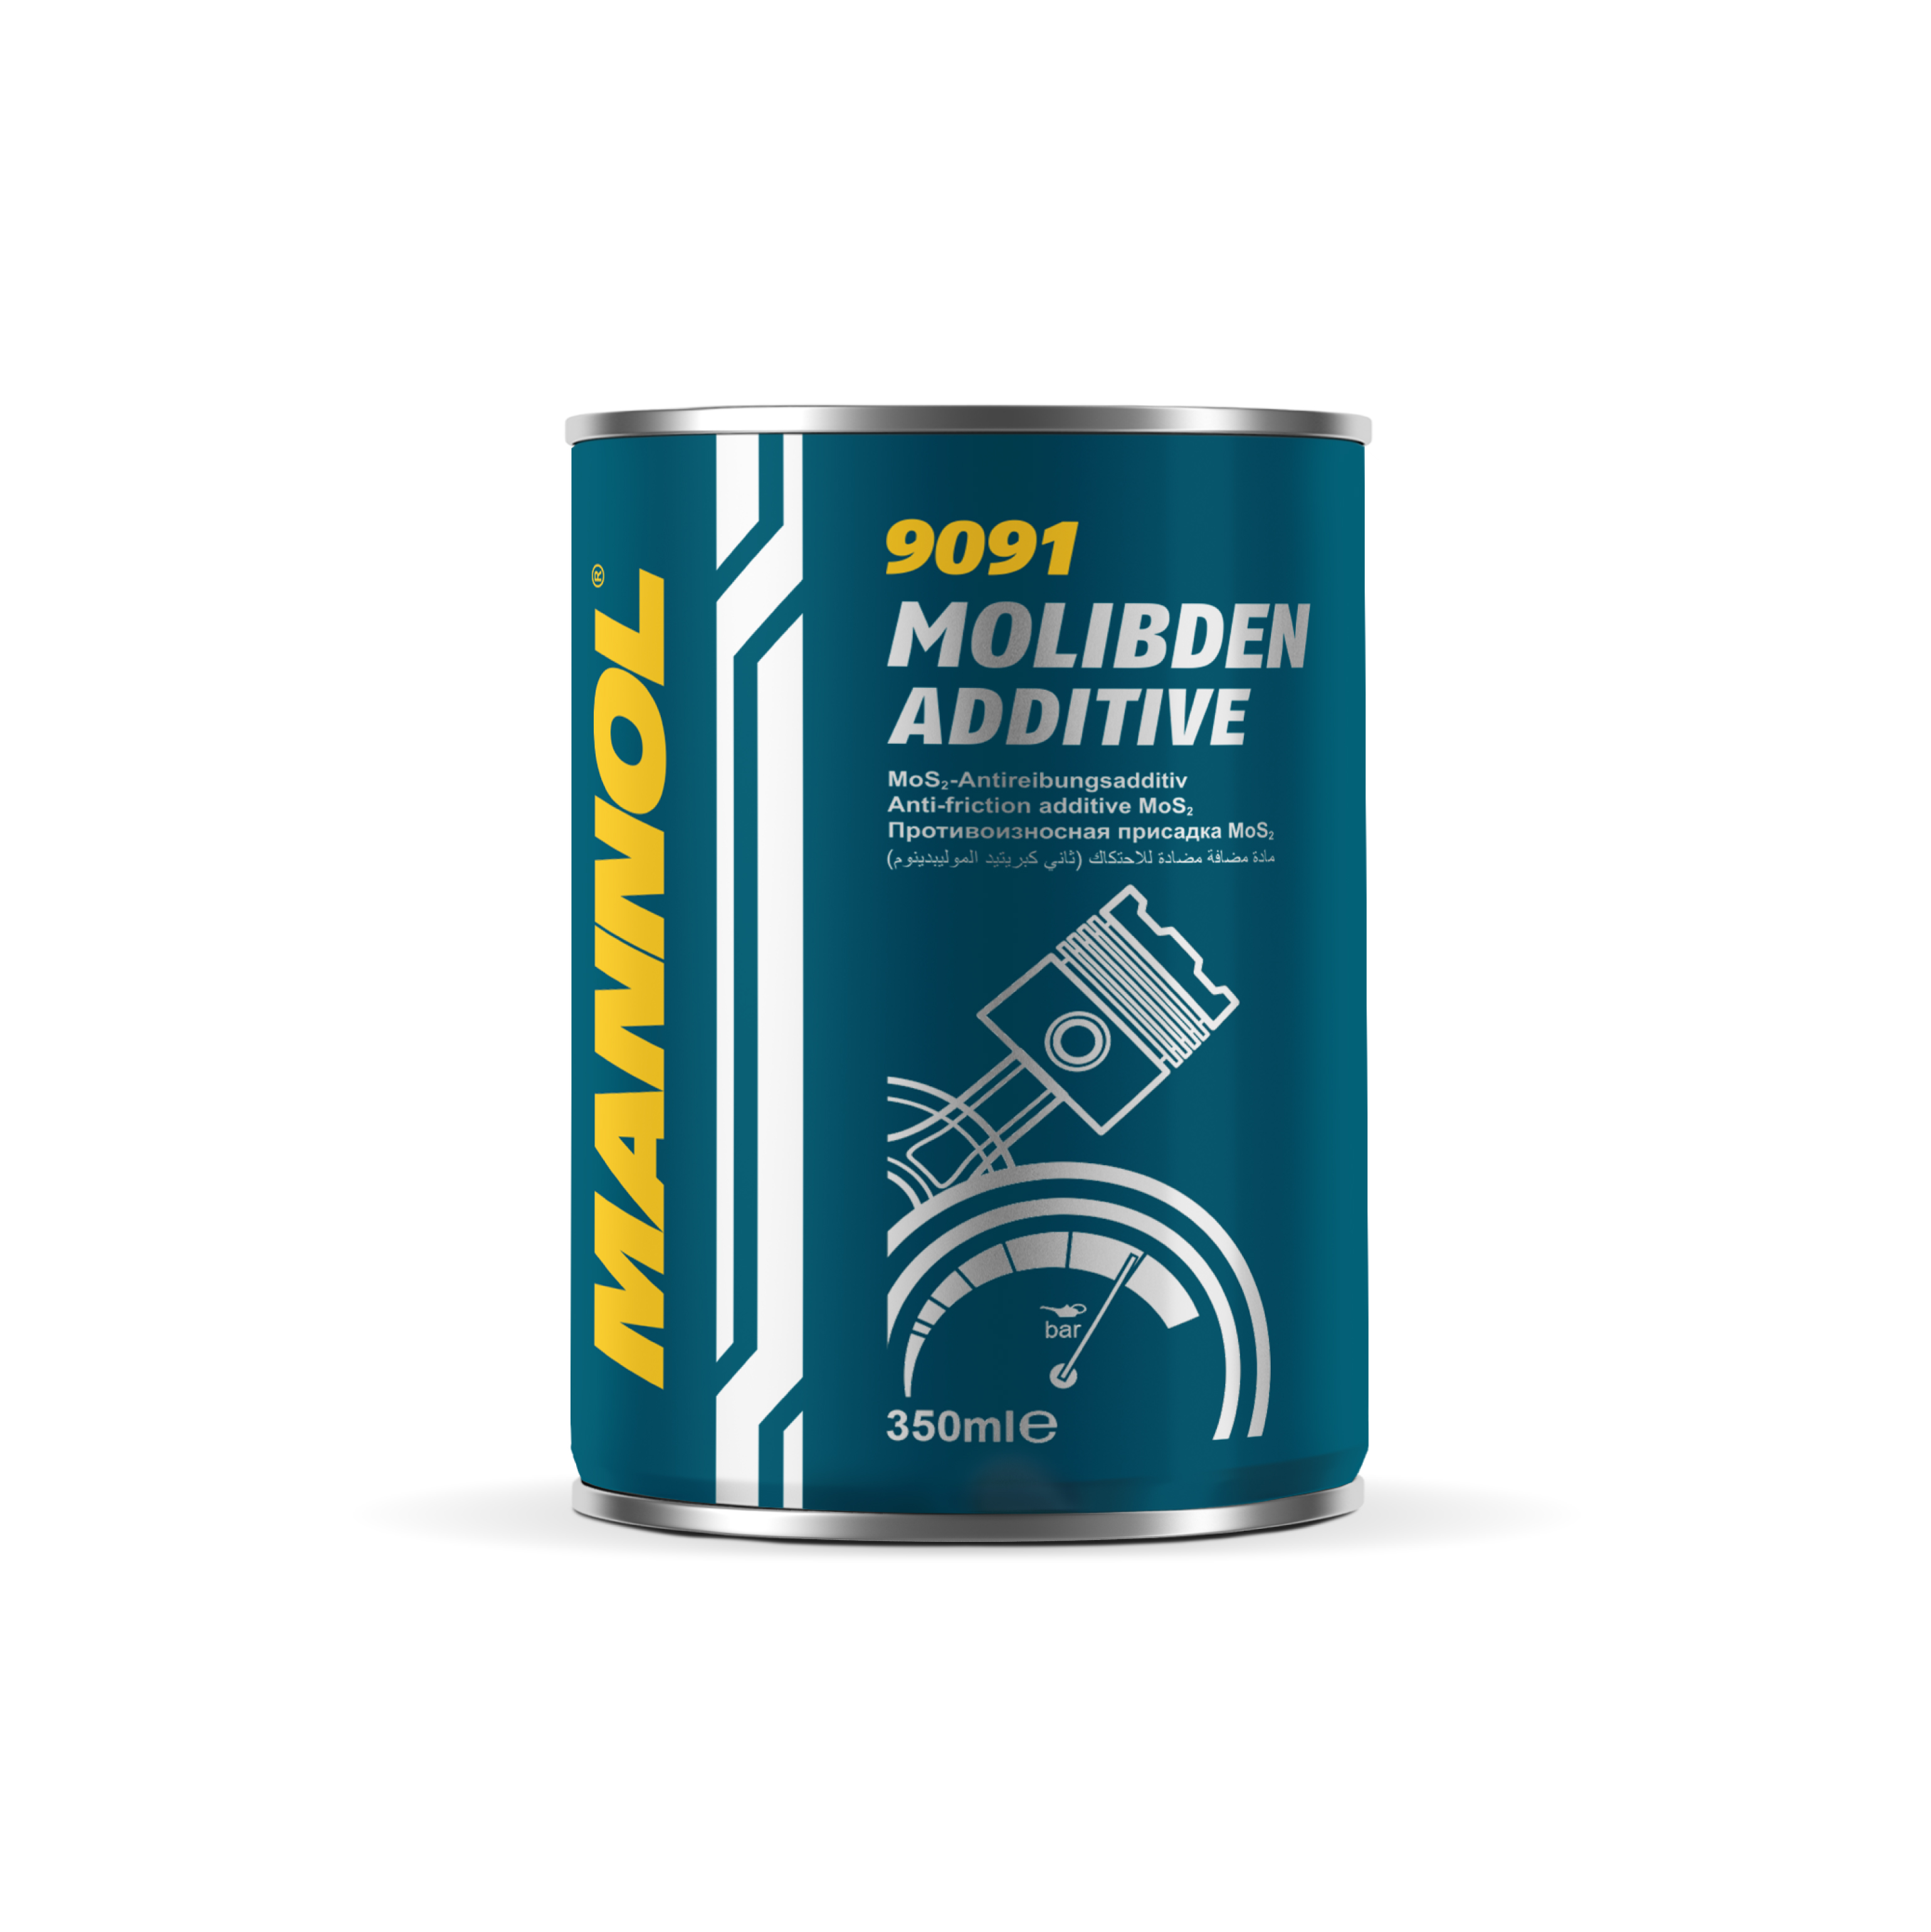 MANNOL Molibden Additive - Engine Oil Additive